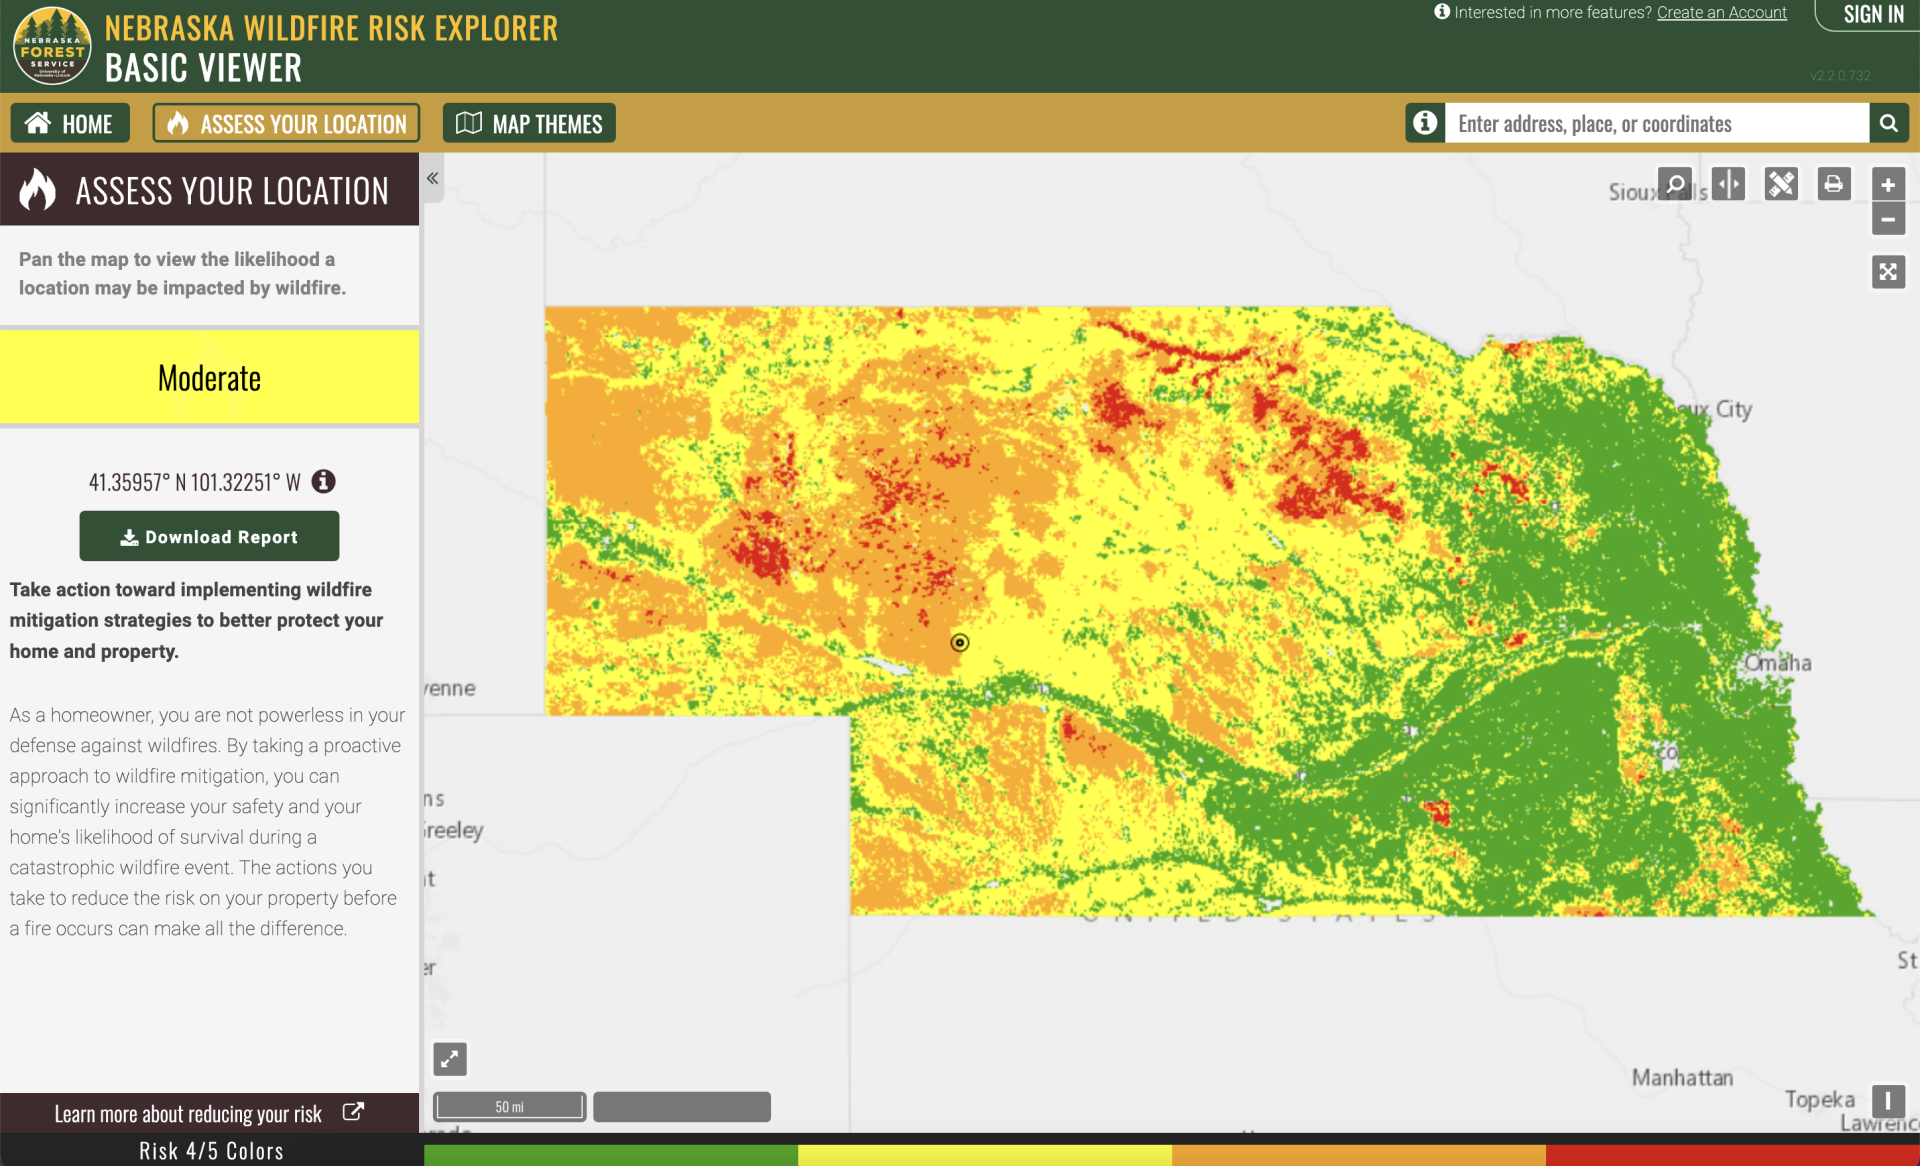 Nebraska wildfire rist assesment tool screenshot.